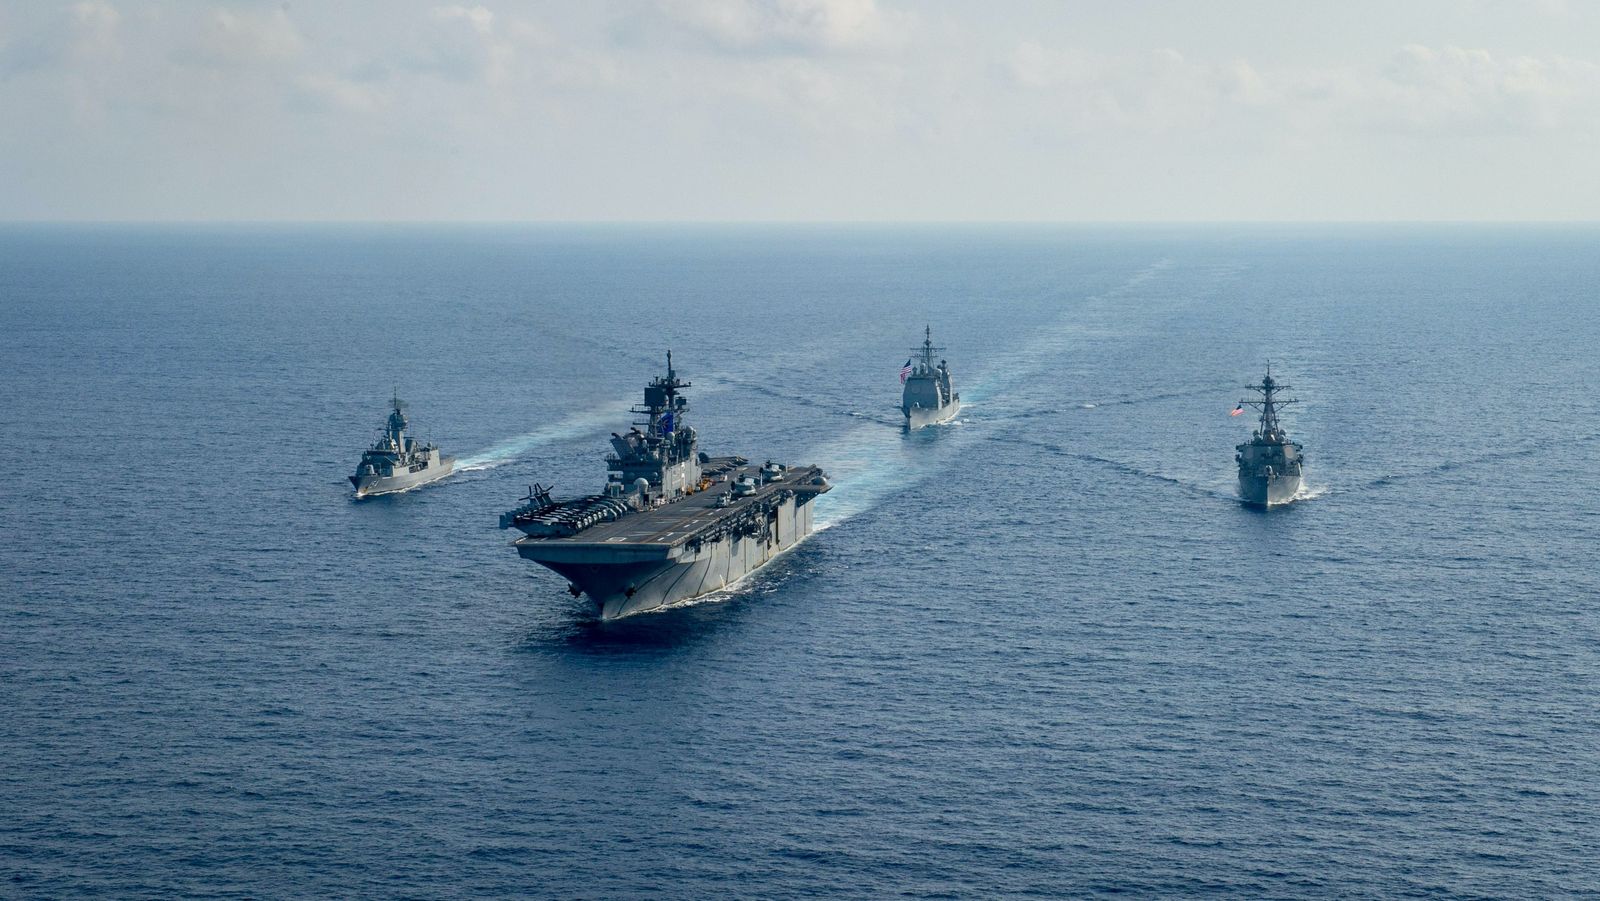 سفن حربية أميركية وأسترالية تبحر في بحر الصين الجنوبي - 18 أبريل 2020 - REUTERS